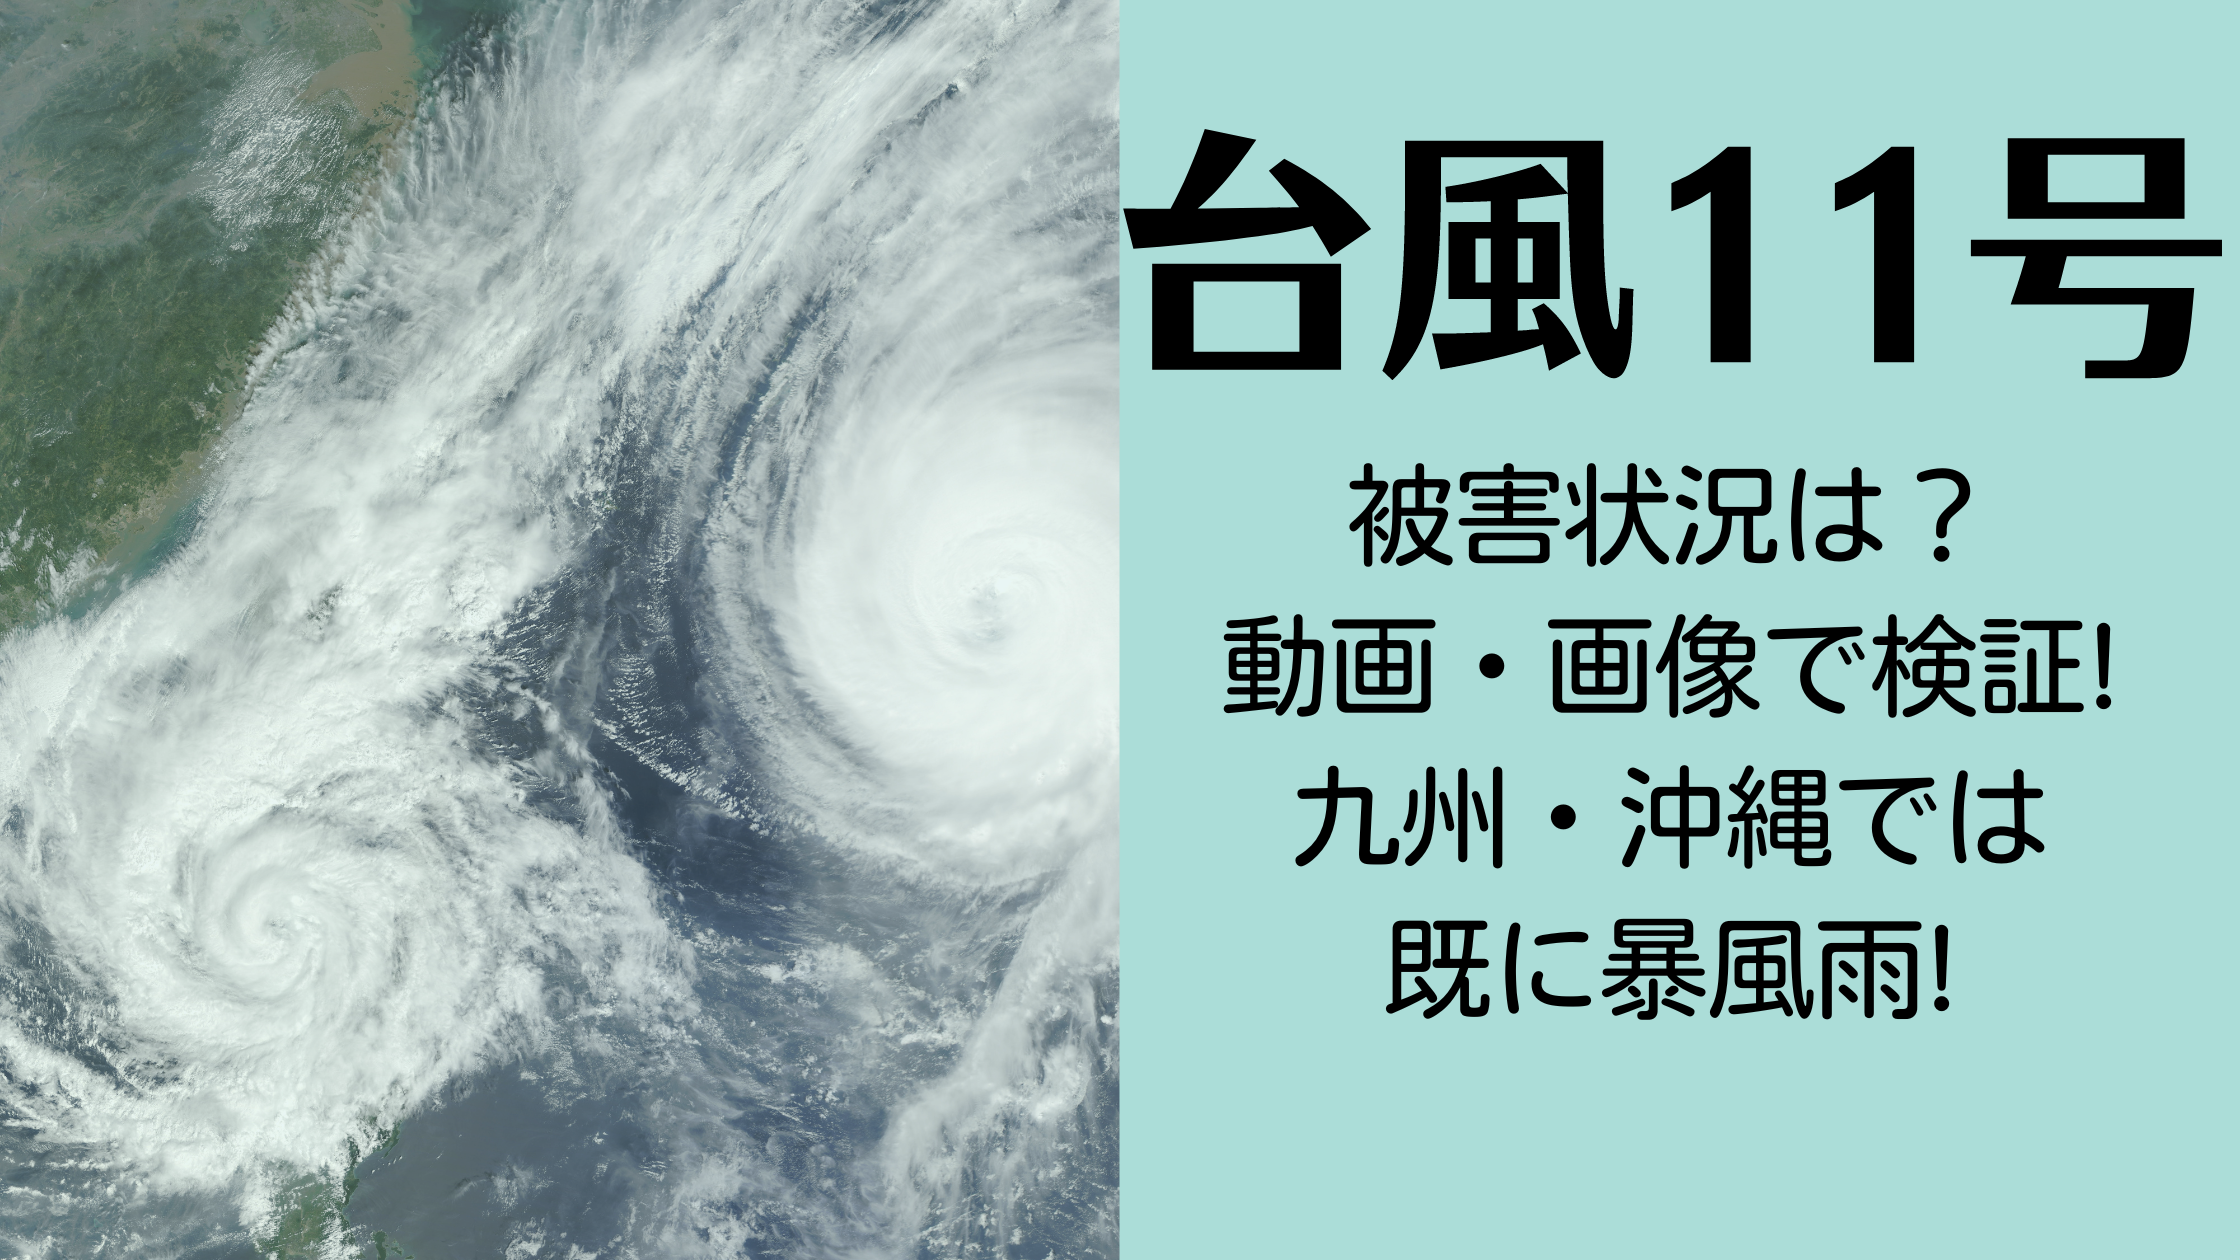 【最新】台風11号被害状況の動画・画像で検証!既に九州・沖縄では暴風雨!